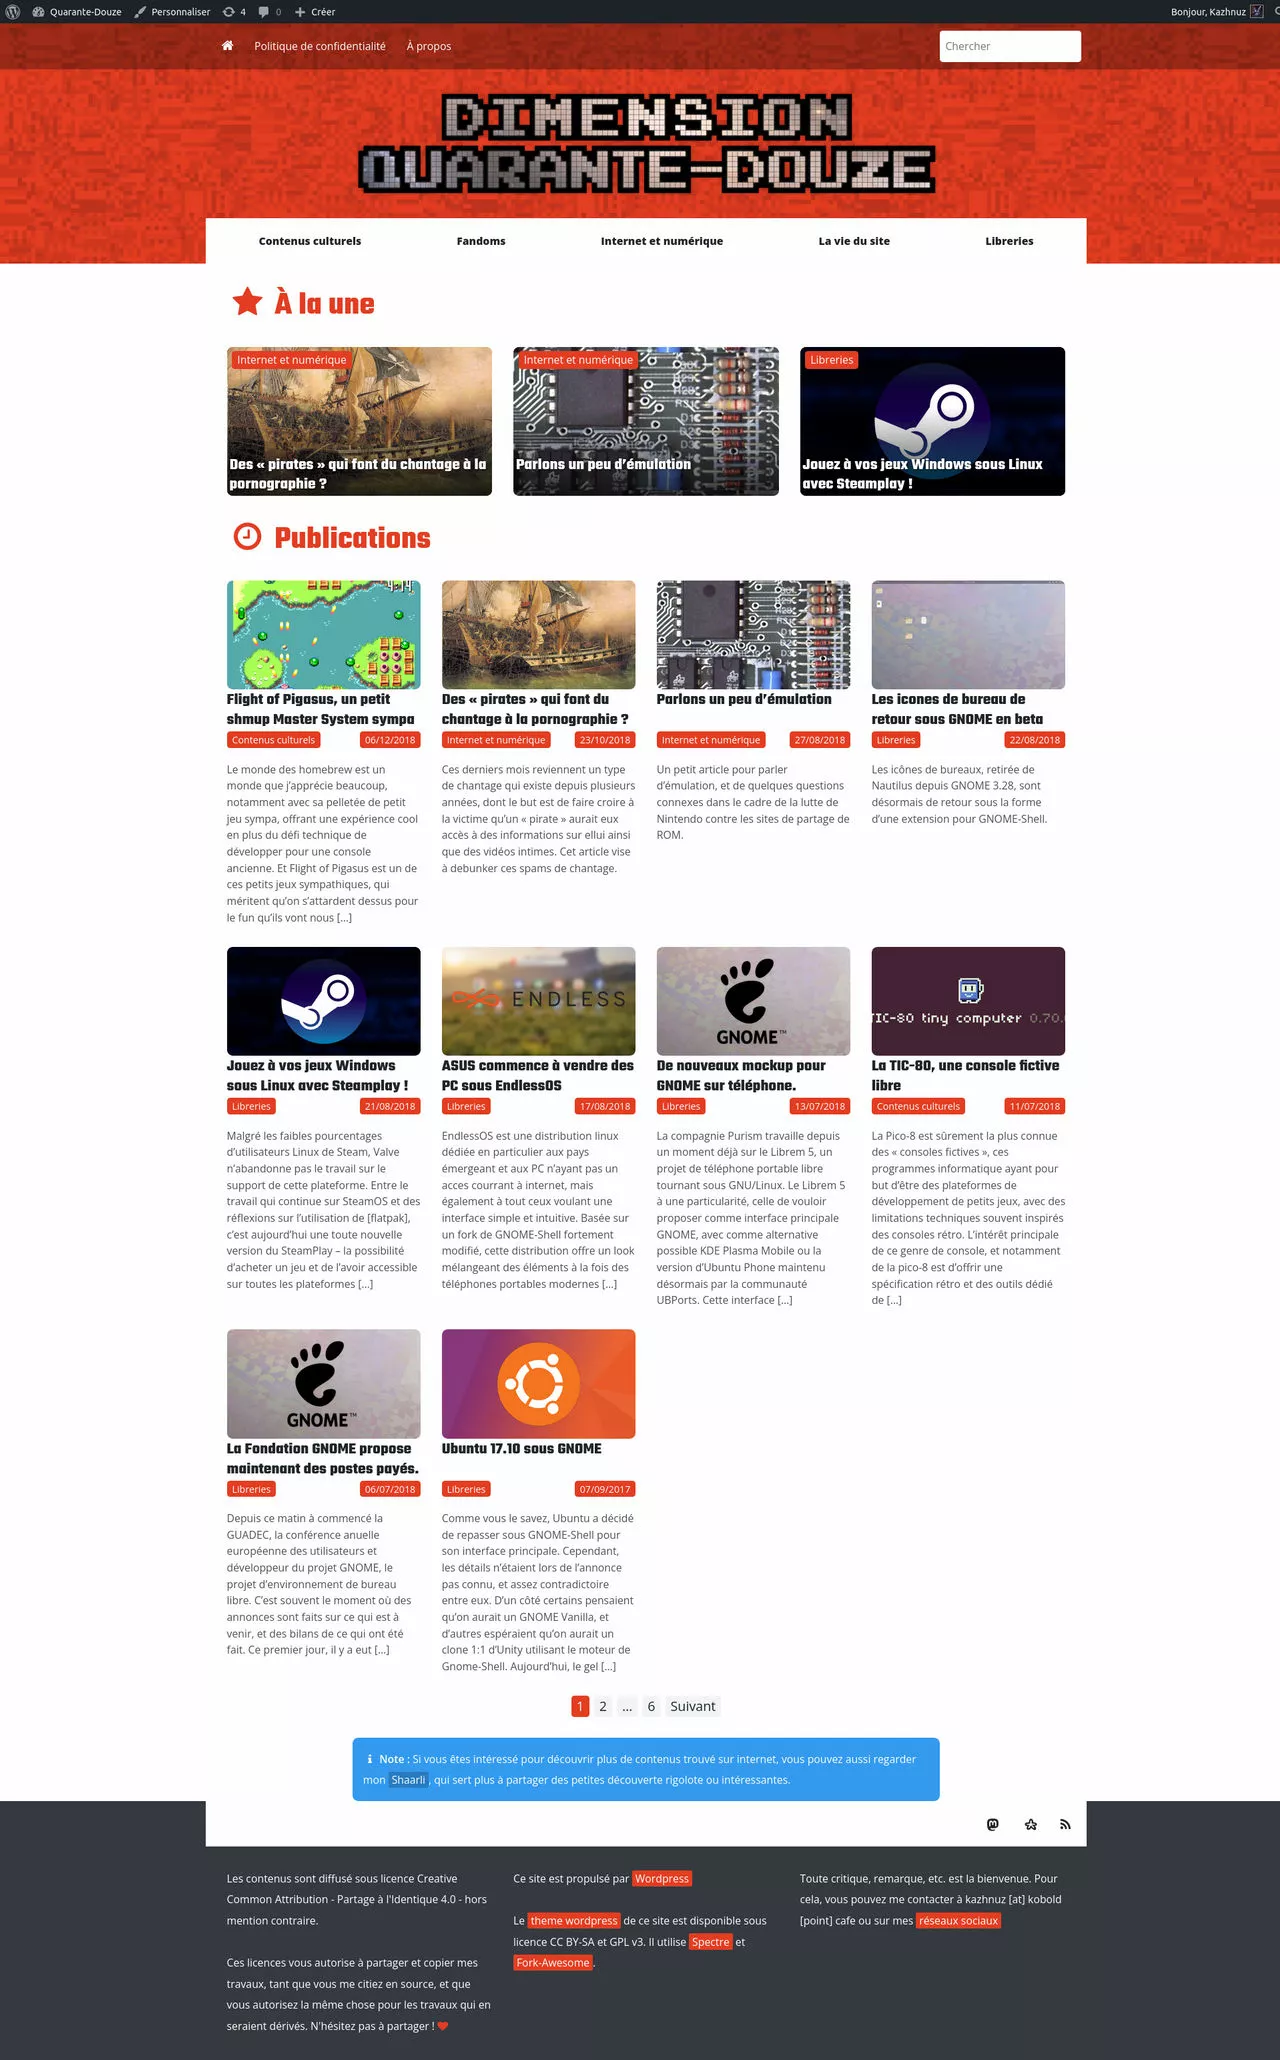 Un design de site web, basée sur des couleurs rouge, blanche et noires.

Le fond du haut contient un aspect glitché et le texte 